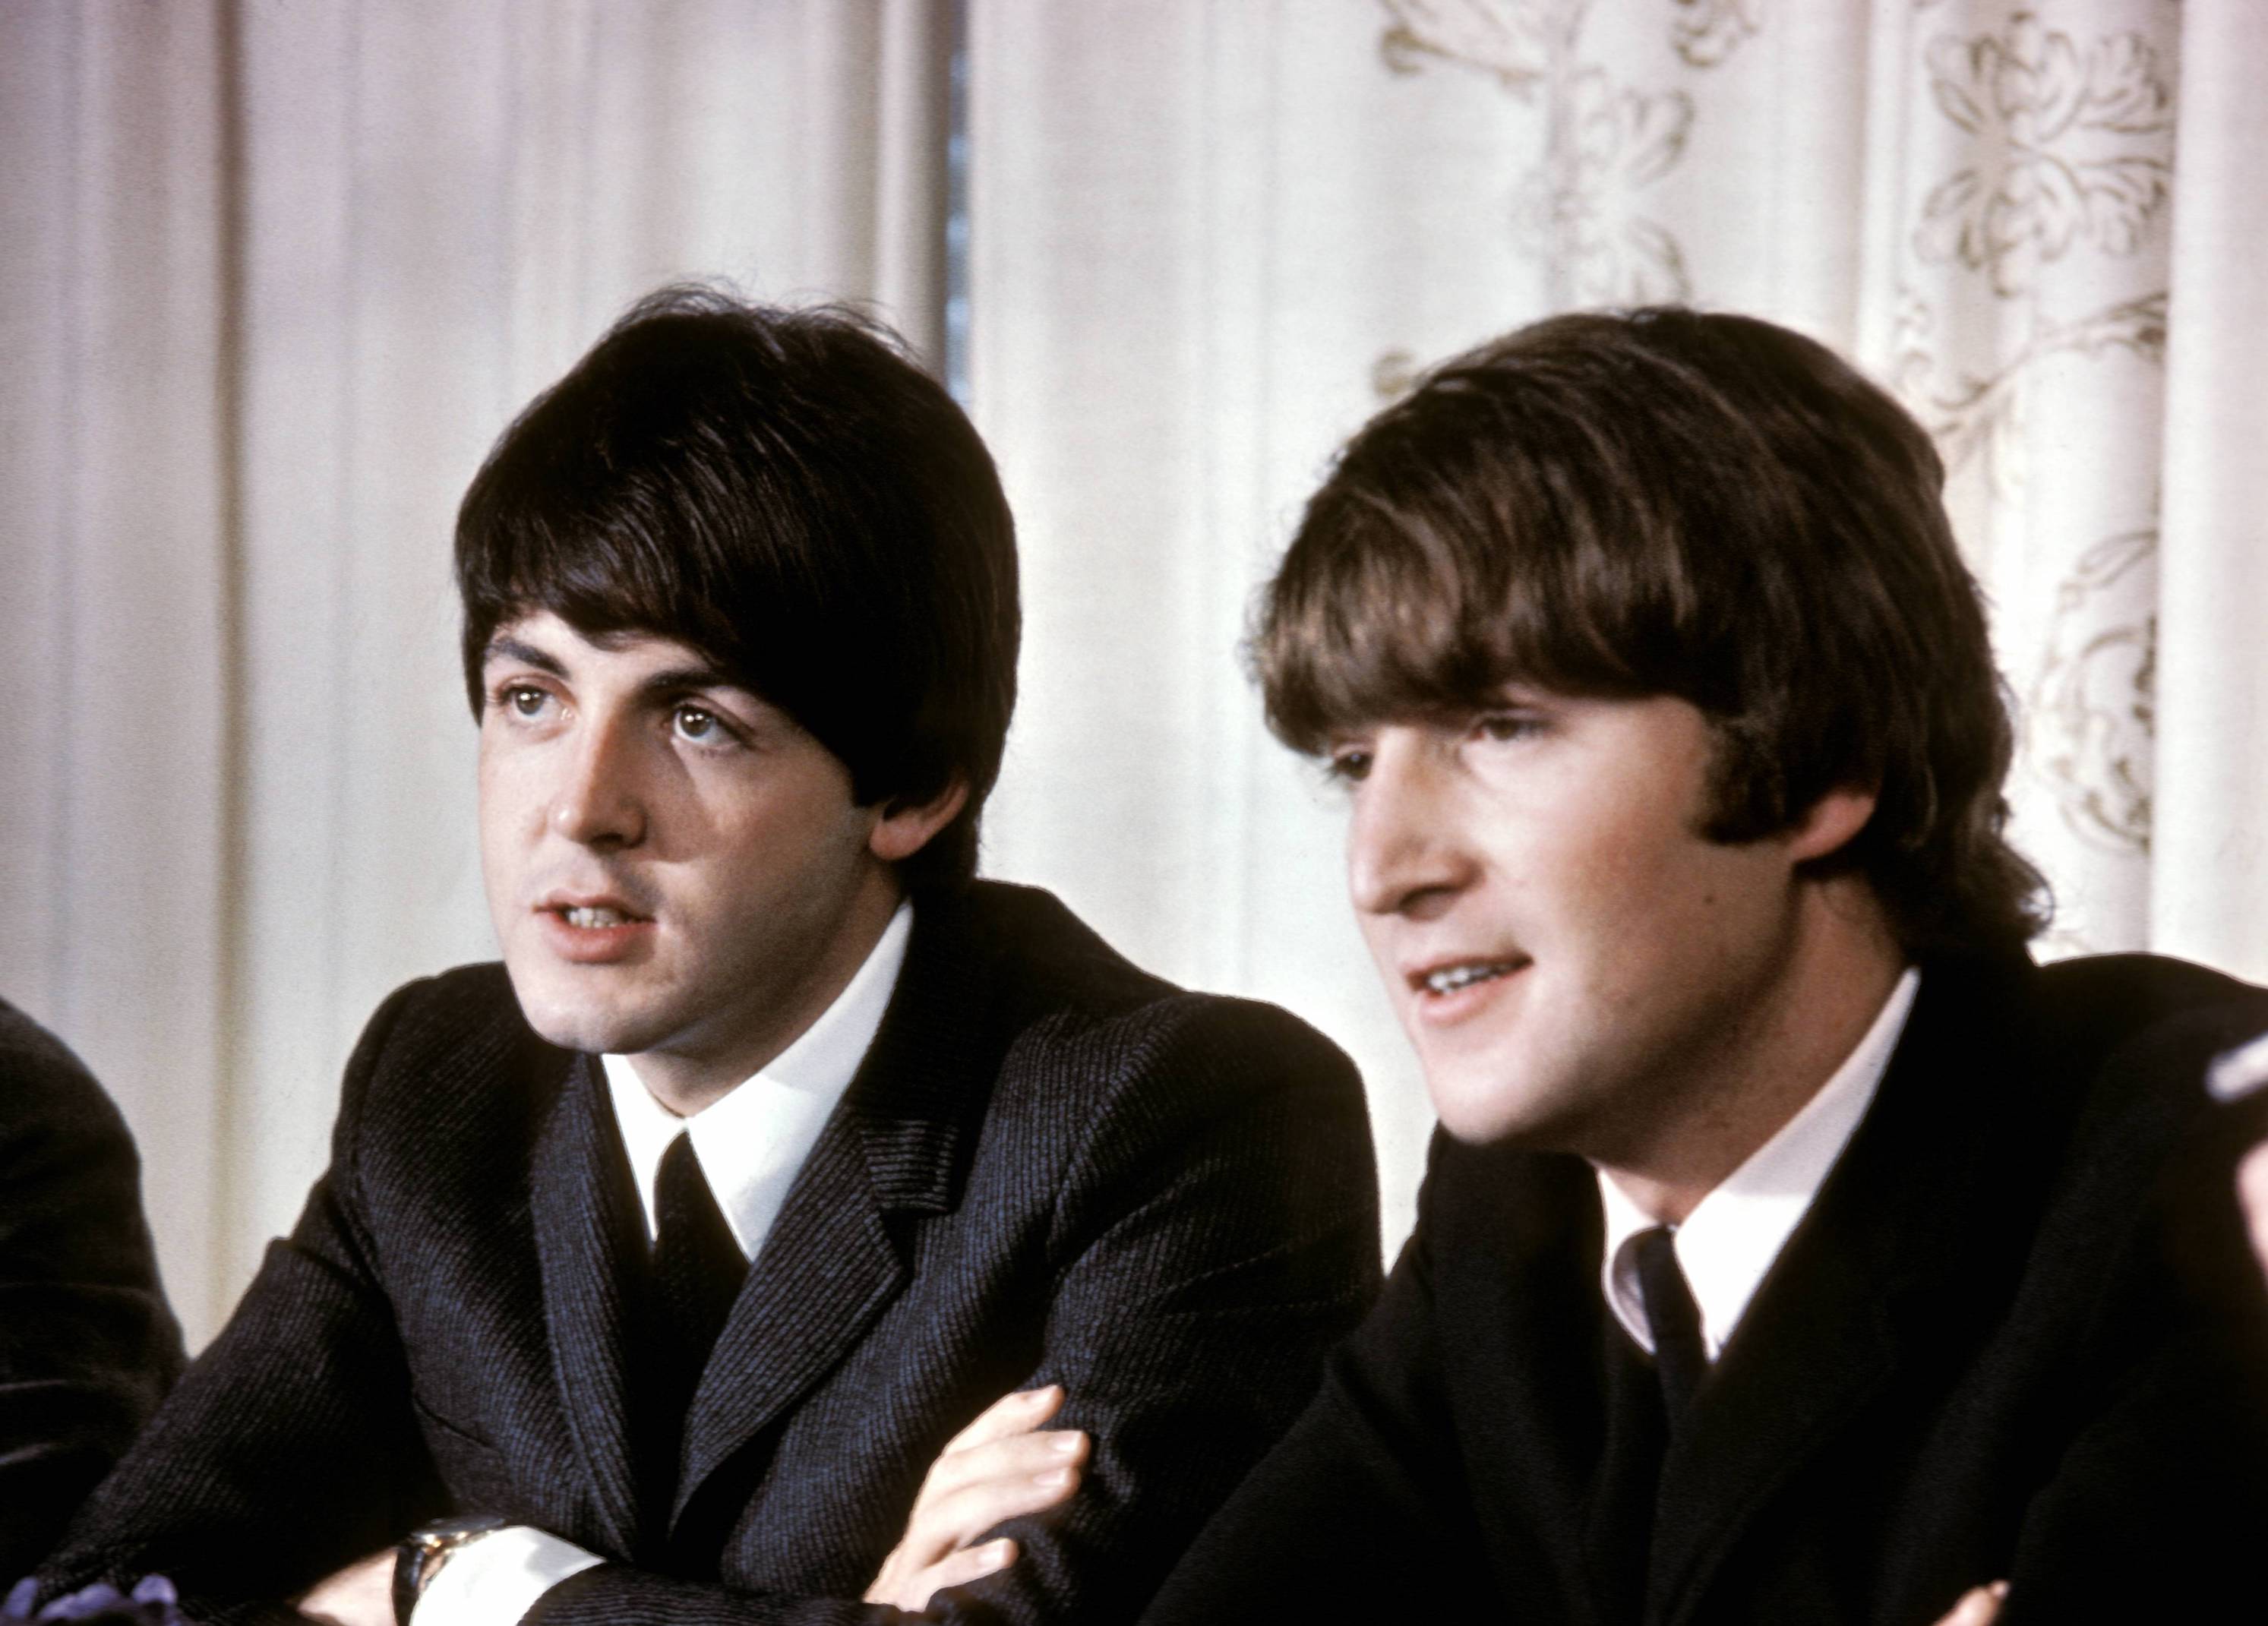 Paul McCartney and John Lennon in Australia